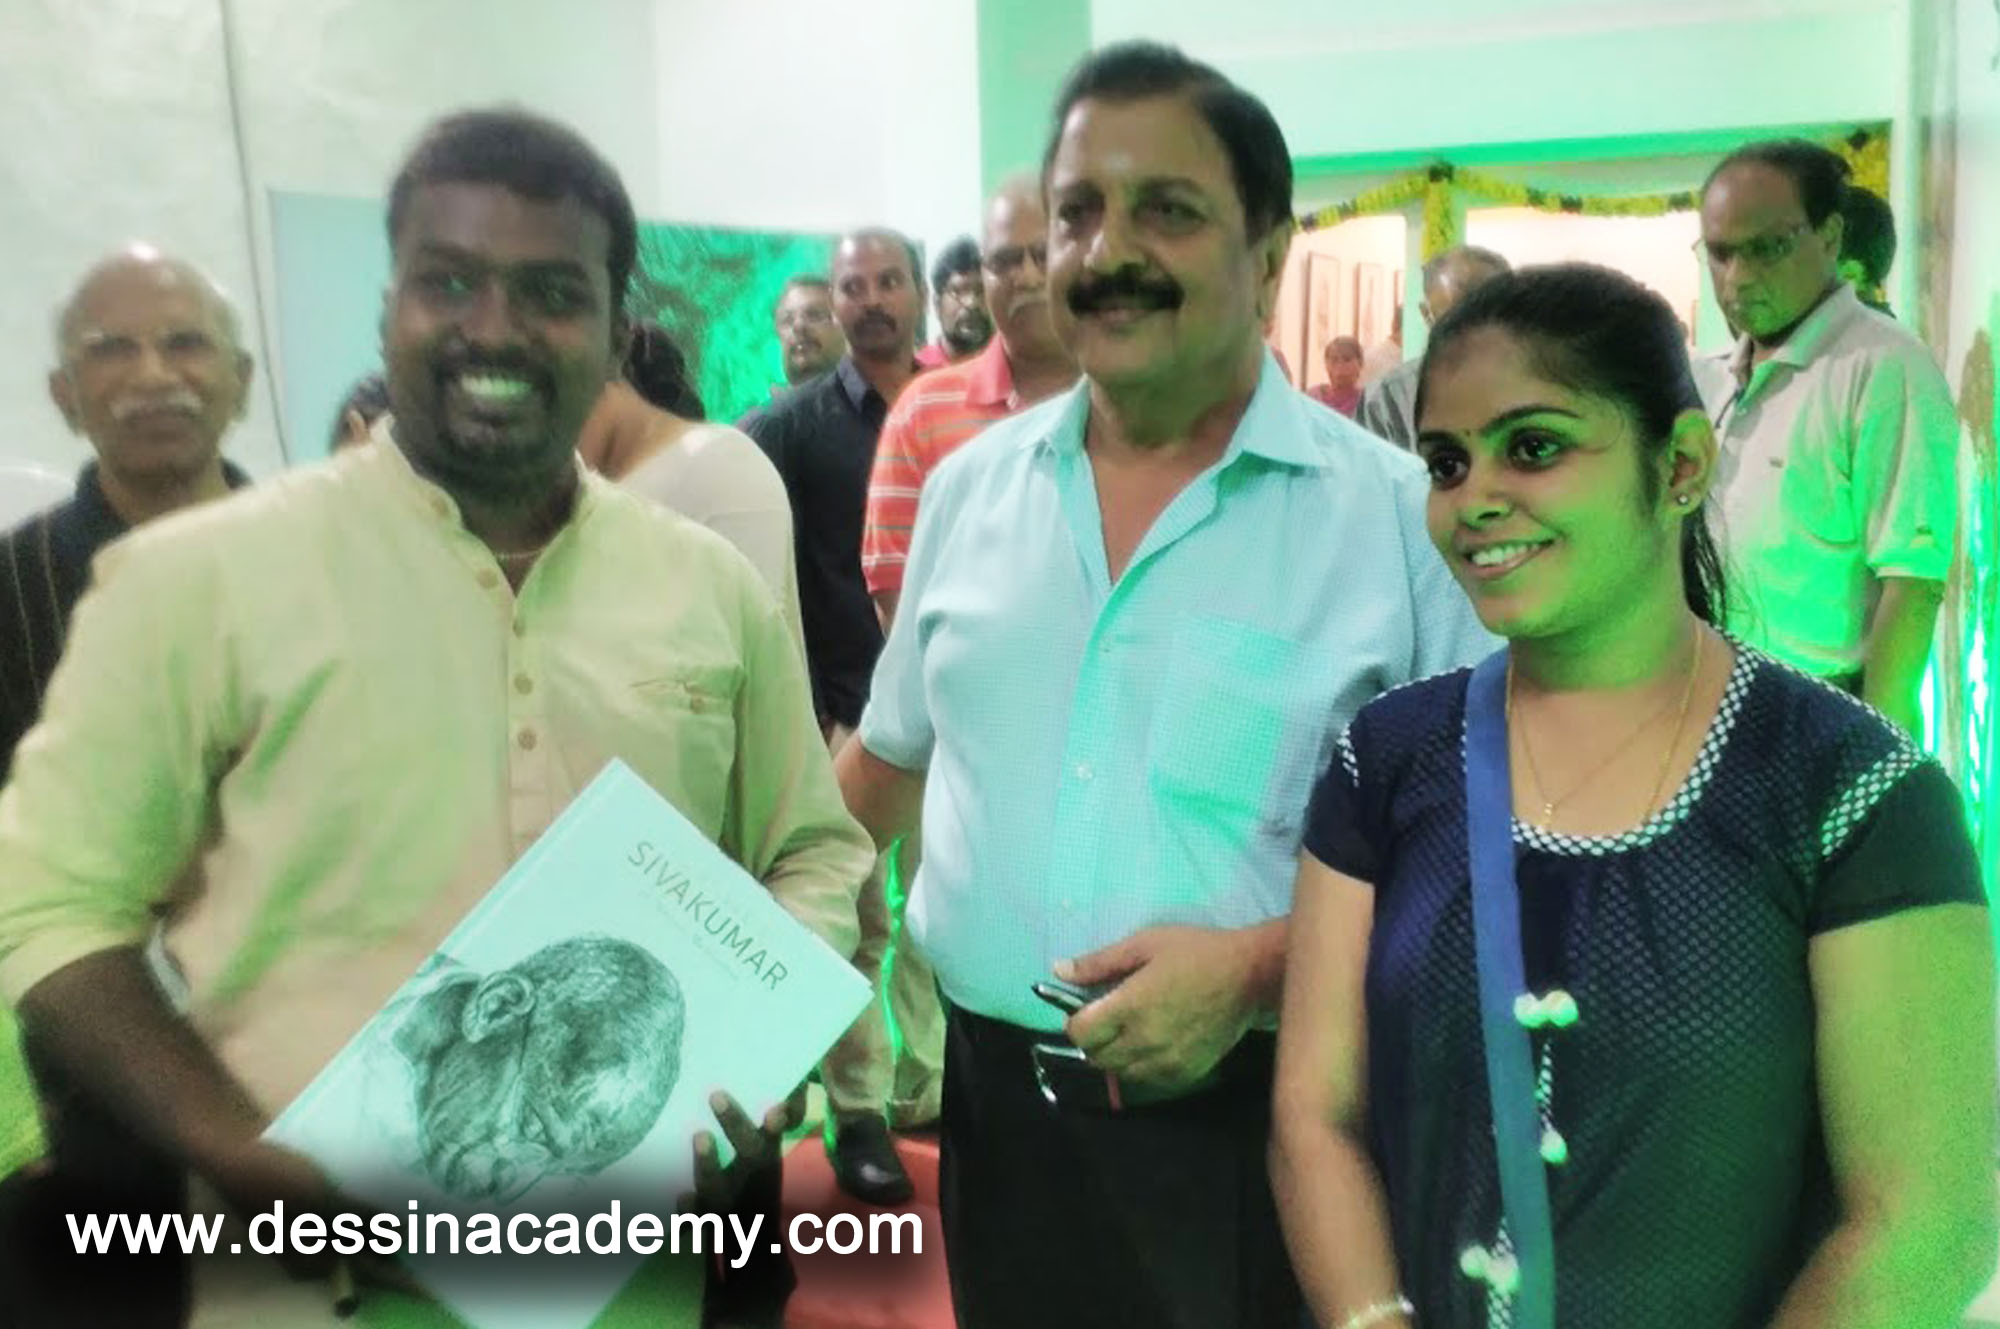 Dessin School of Arts Event Gallery 4, Drawing Institute in KotturpuramDessin School of Arts